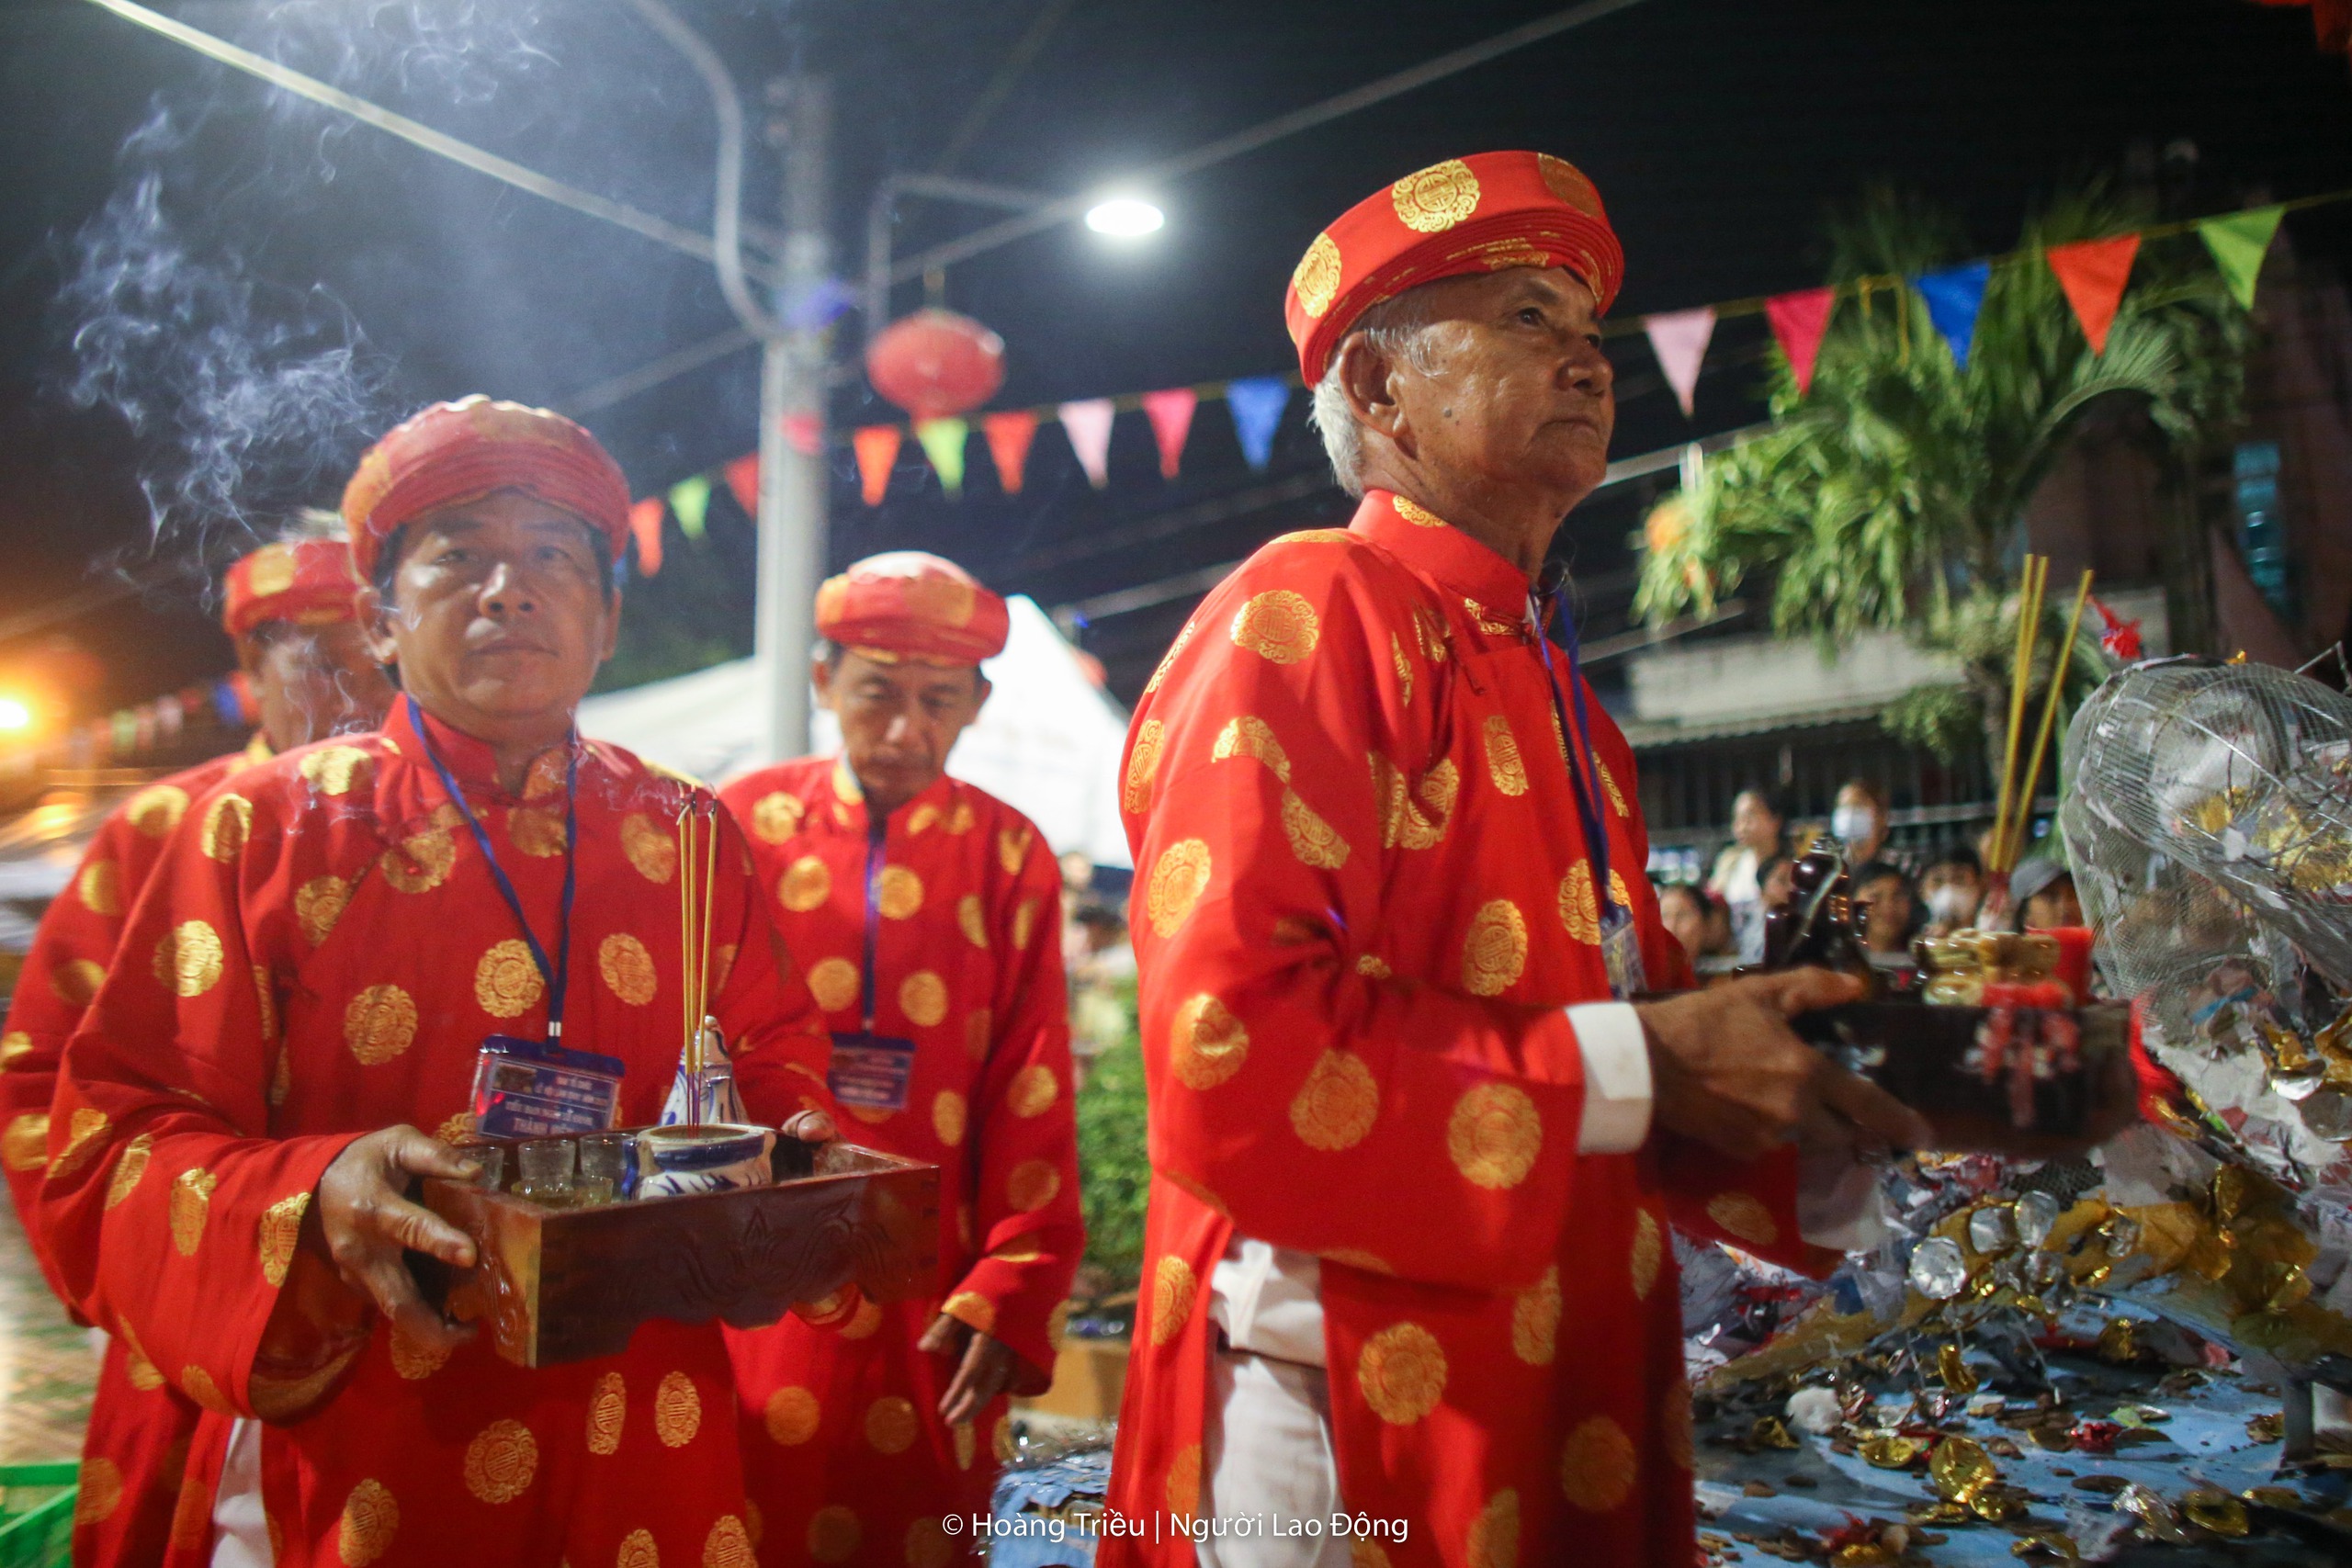 Hàng ngàn người tranh lộc trong đêm tại lễ hội Làm Chay- Ảnh 2.